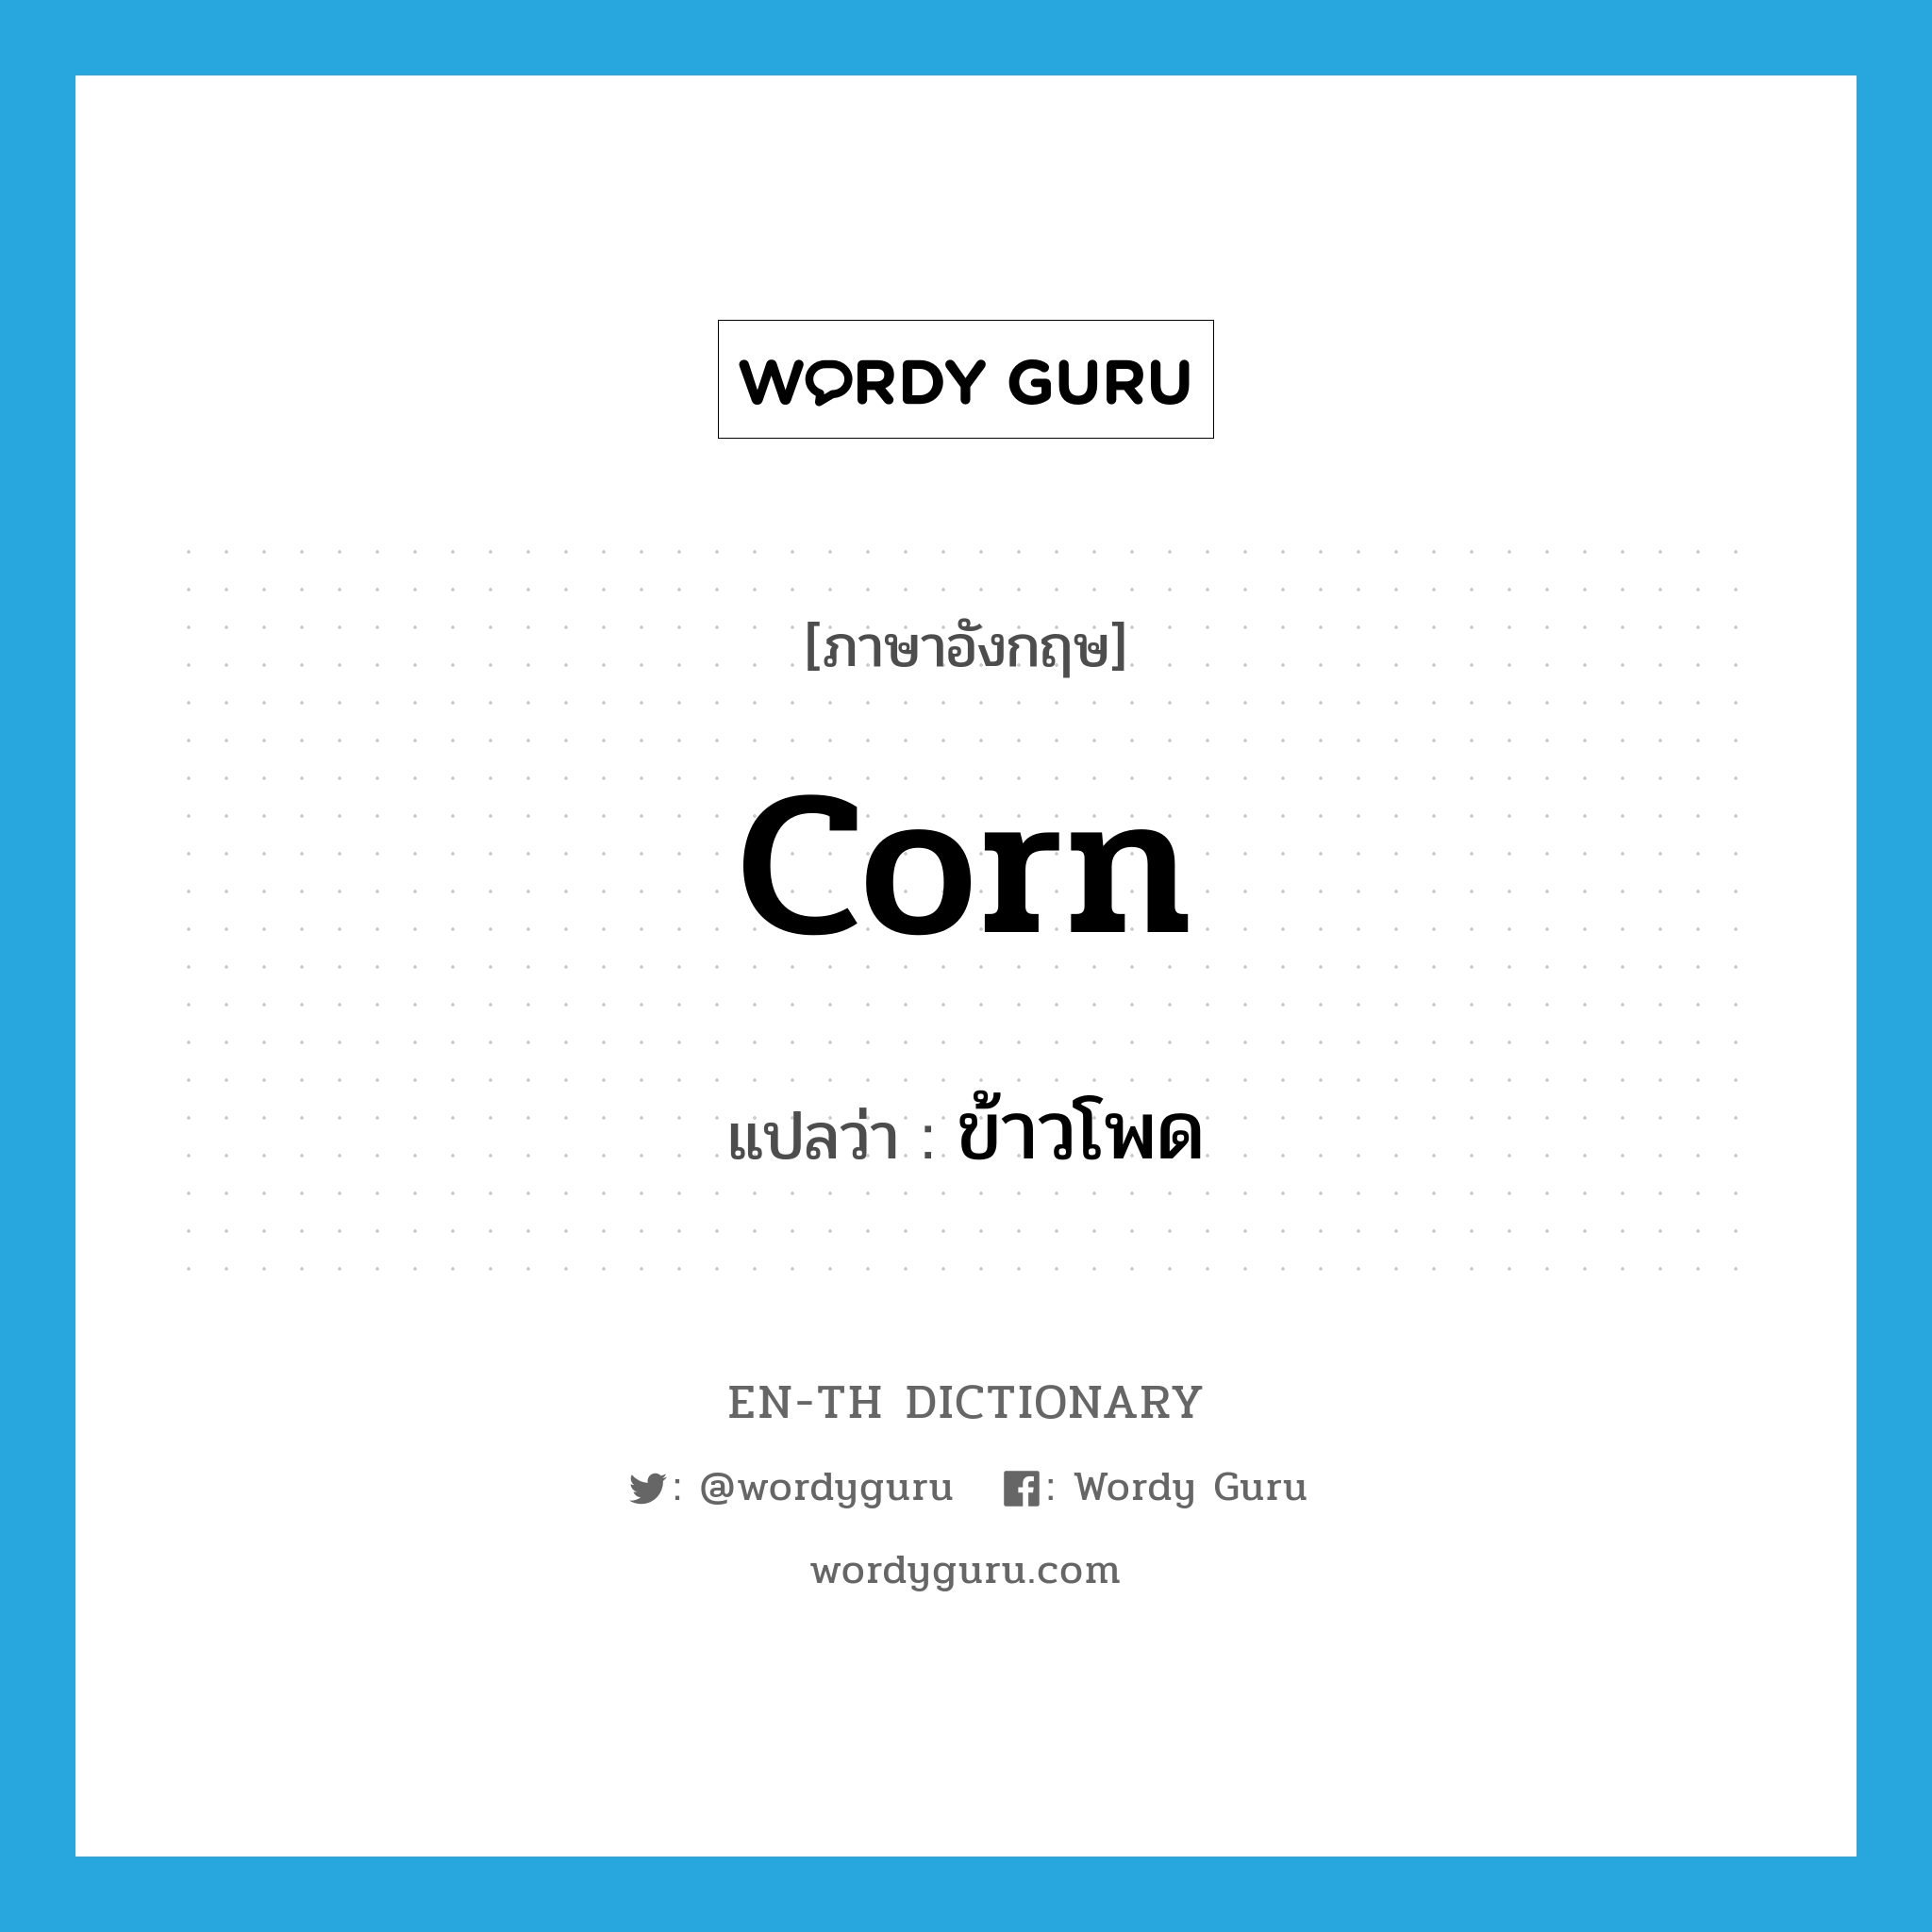 corn แปลว่า?, คำศัพท์ภาษาอังกฤษ corn แปลว่า ข้าวโพด ประเภท N หมวด N